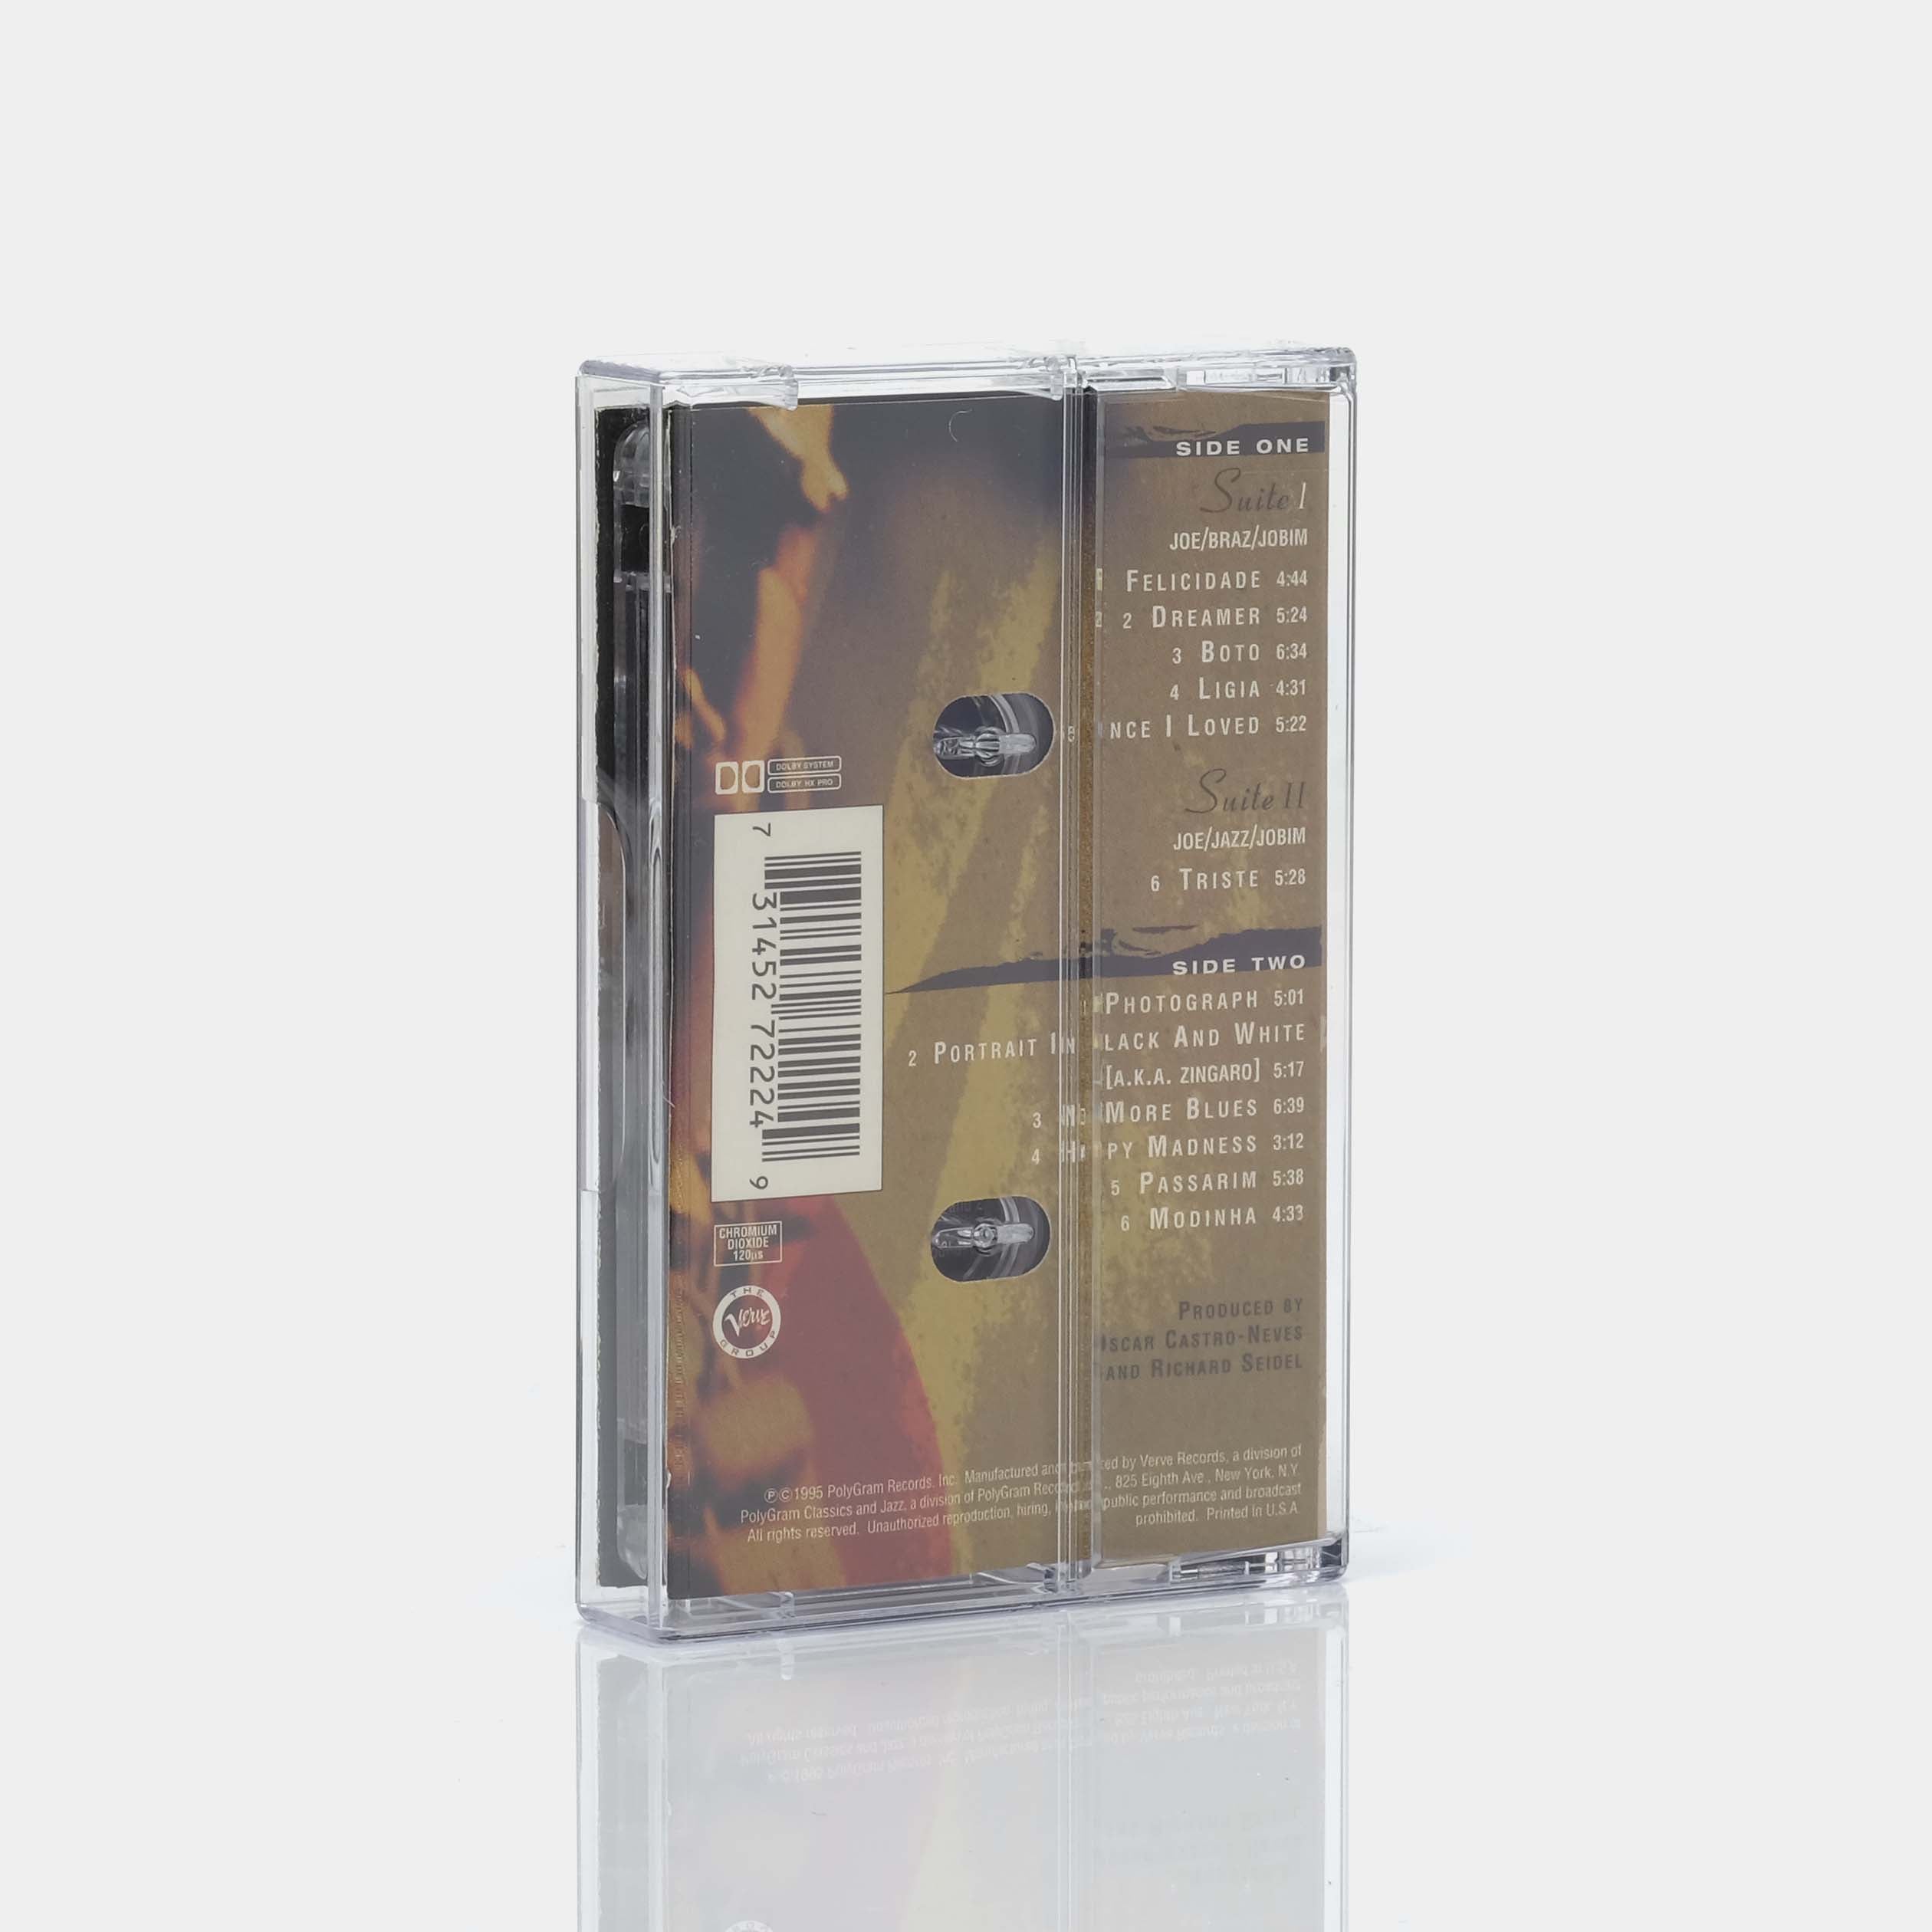 Joe Henderson - Double Rainbow Cassette Tape